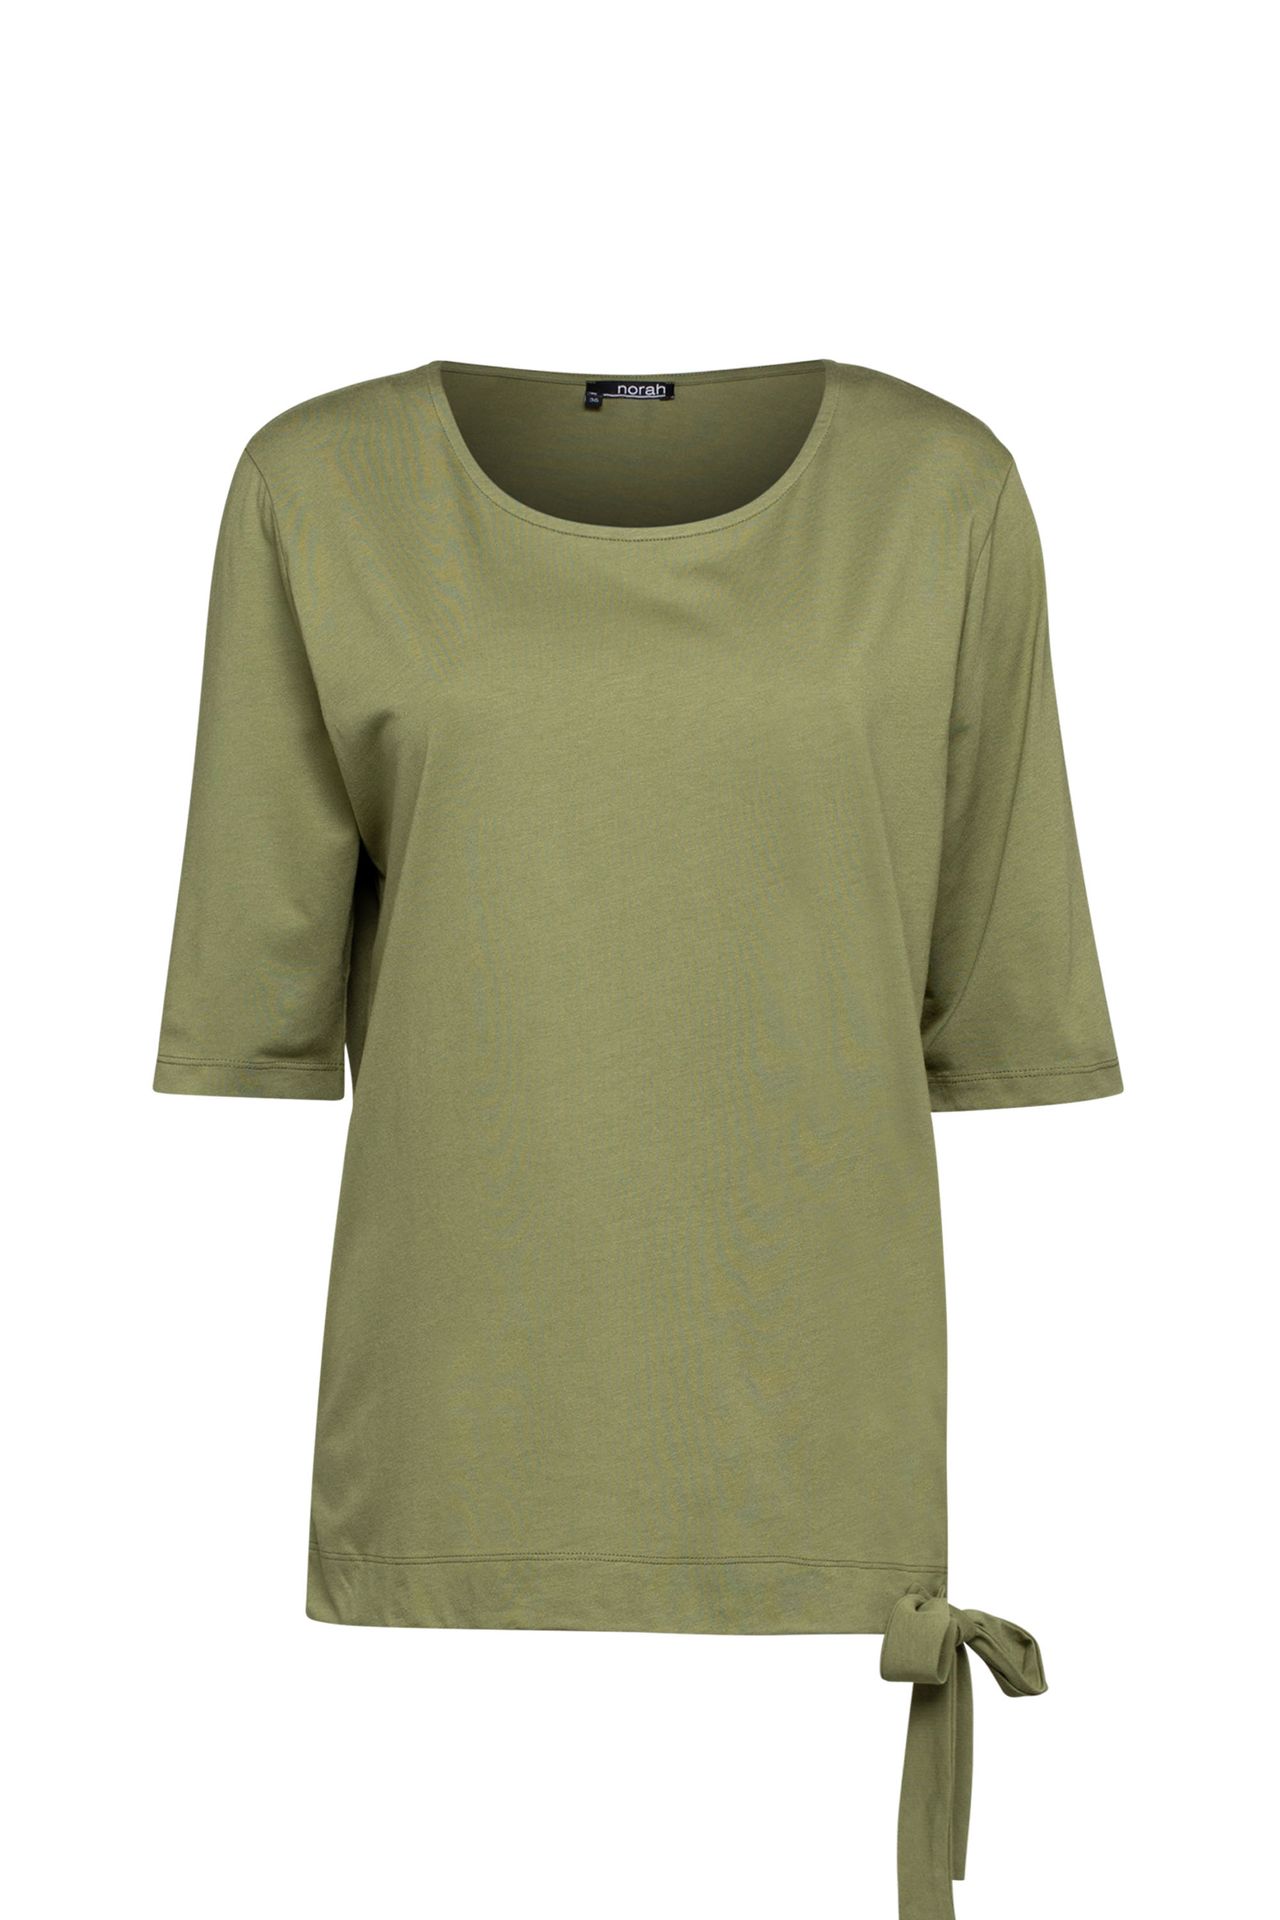 Norah Shirt groen light army 209993-582